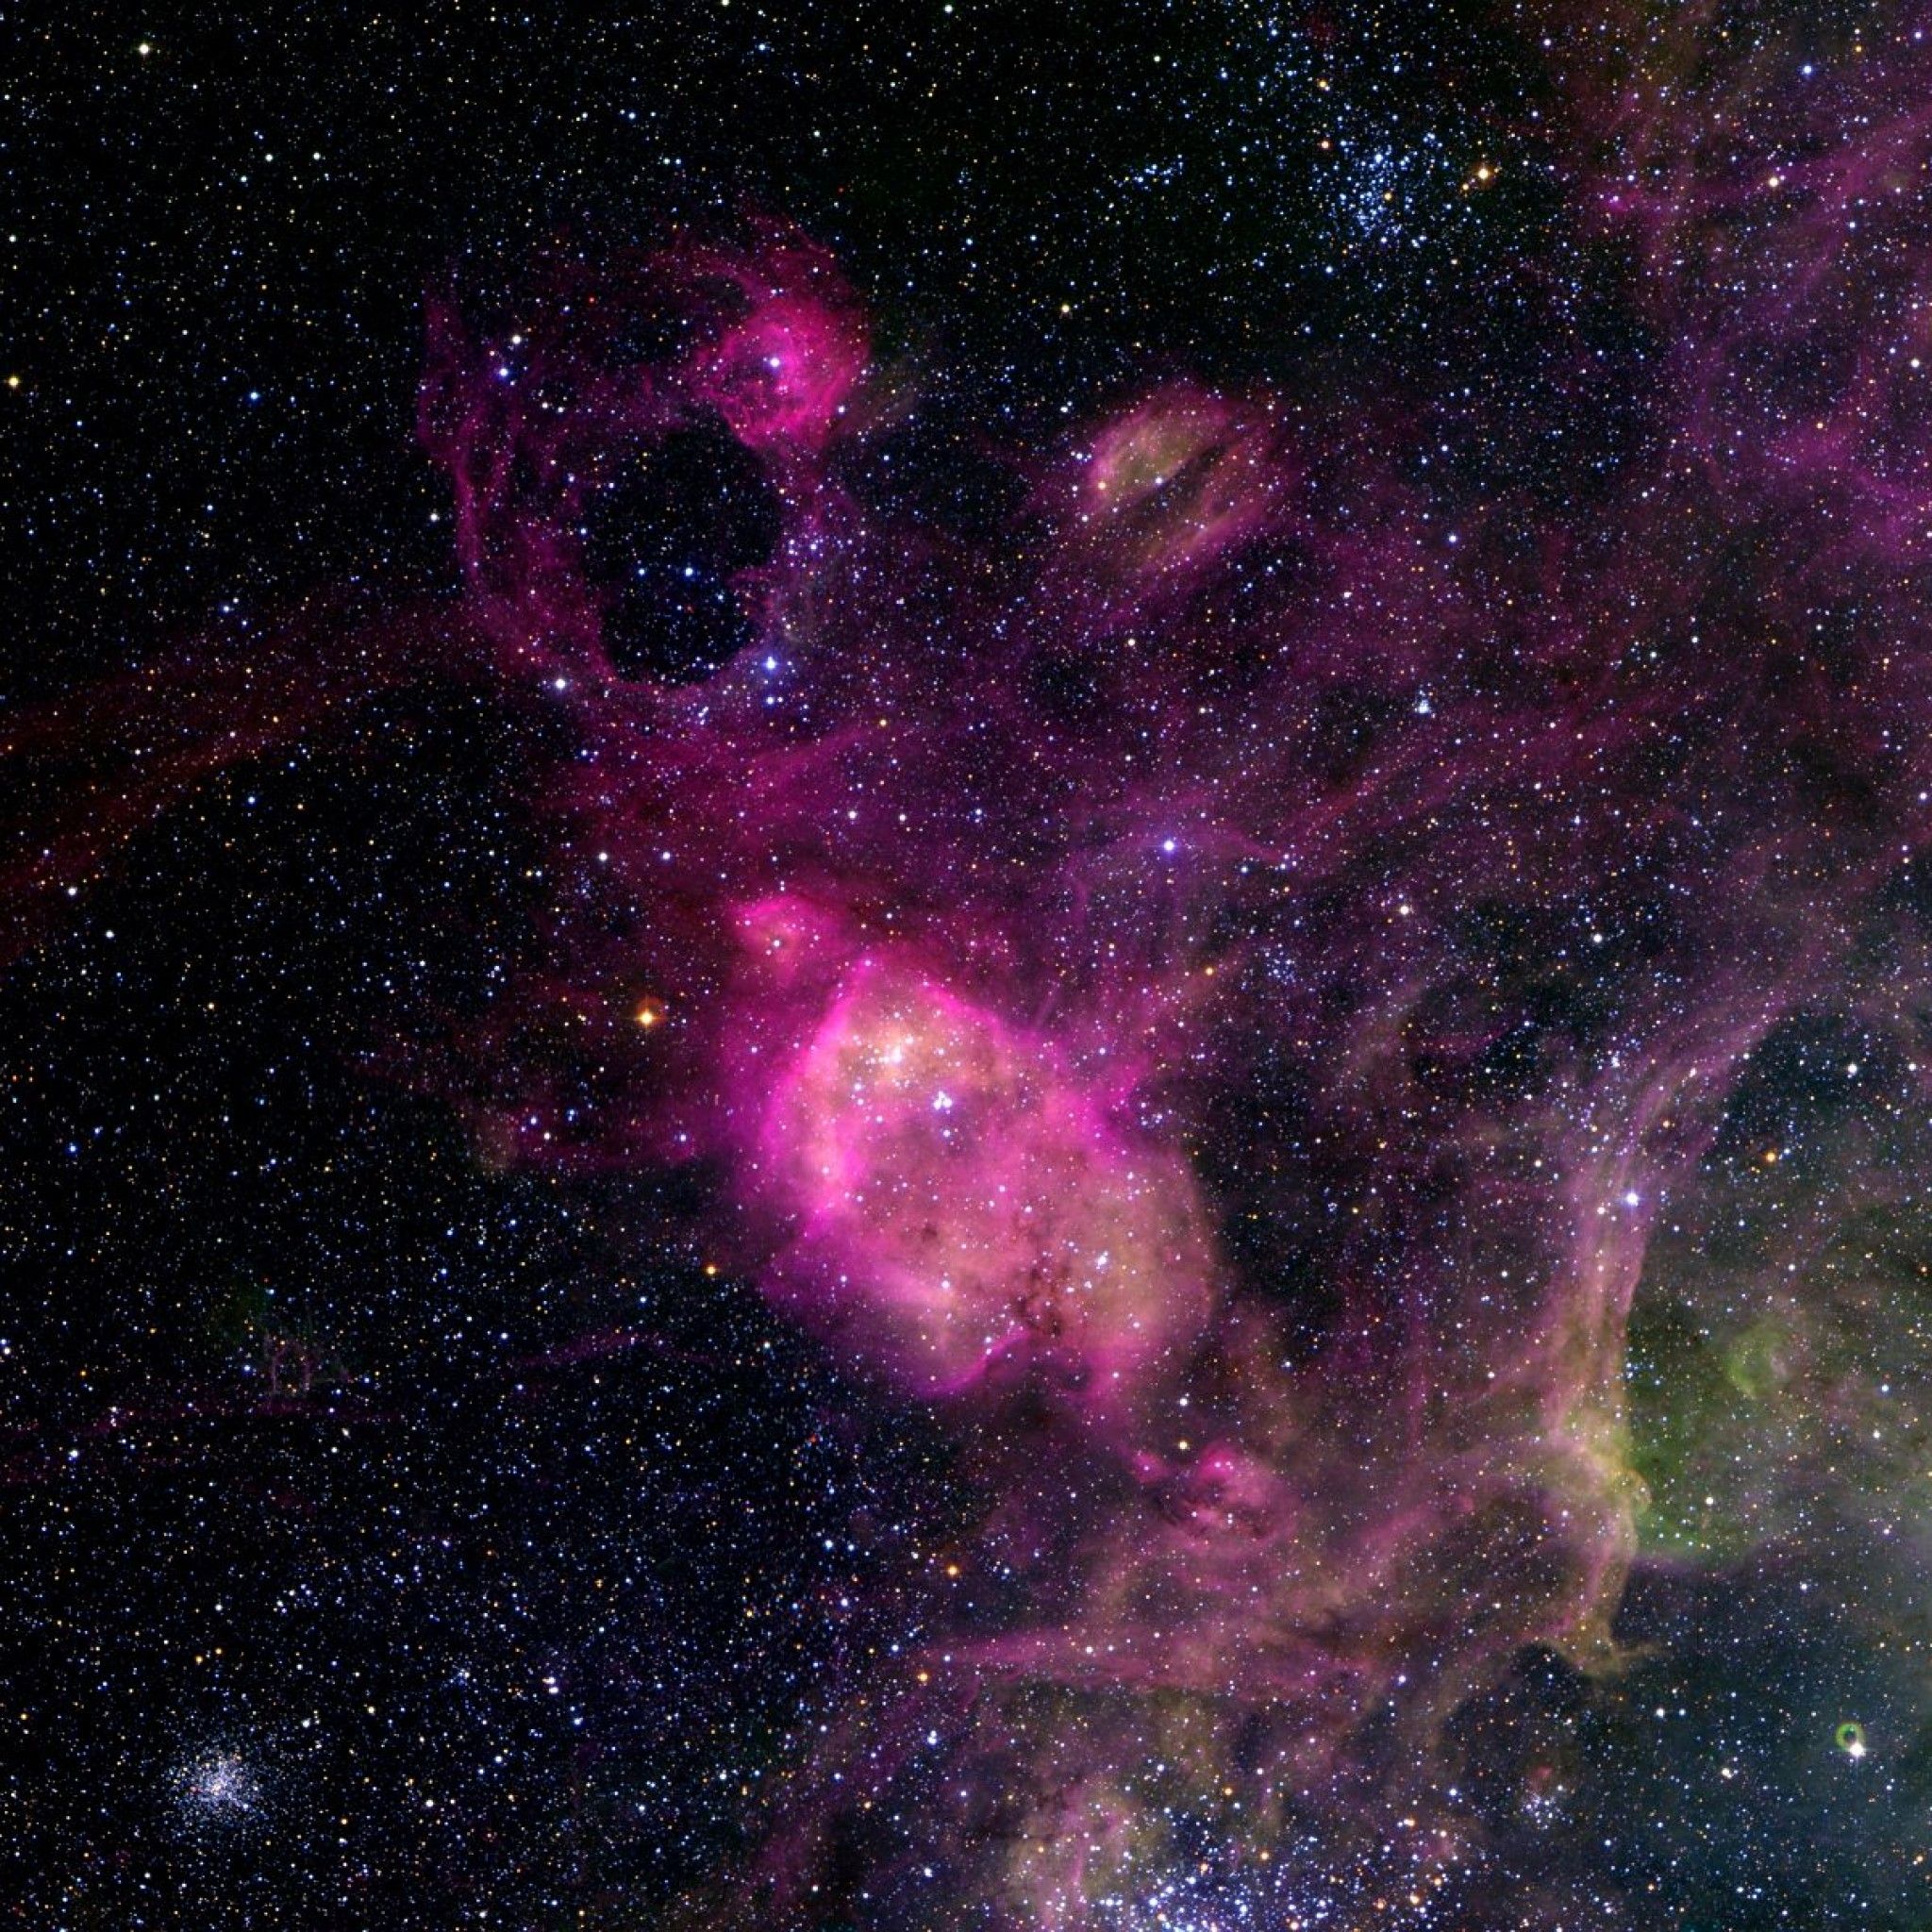 Nebula iPad Wallpaper Retina - Pics about space